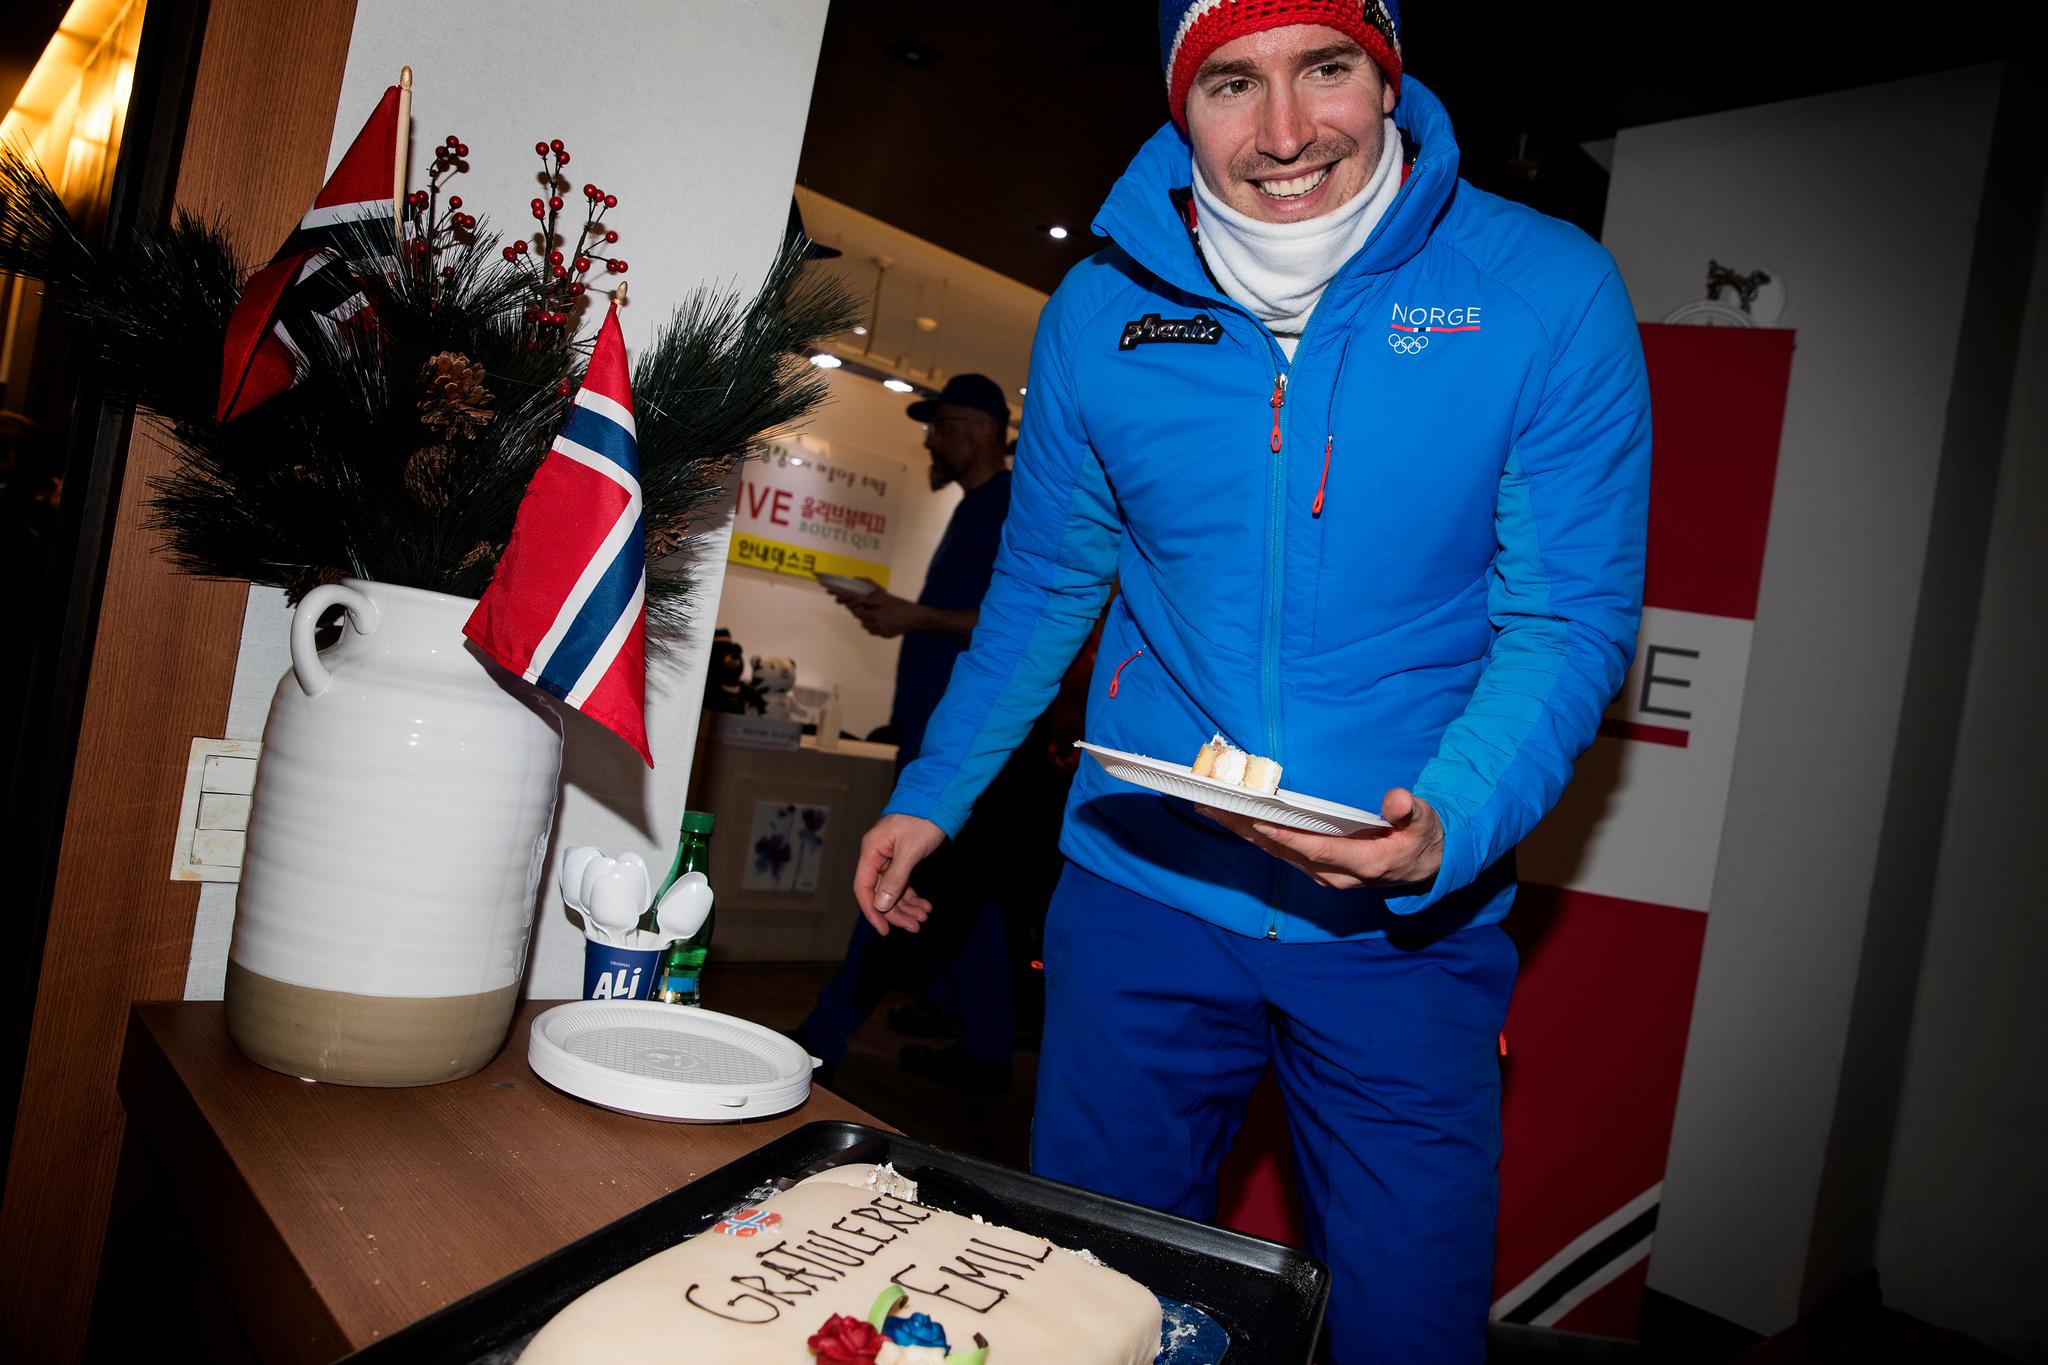 KAKEMOMS: Hegle Svendsen gledet seg til kake etter bronsemedaljen på fellesstarten. Heldigvis for han fikk han det som han ønsket.